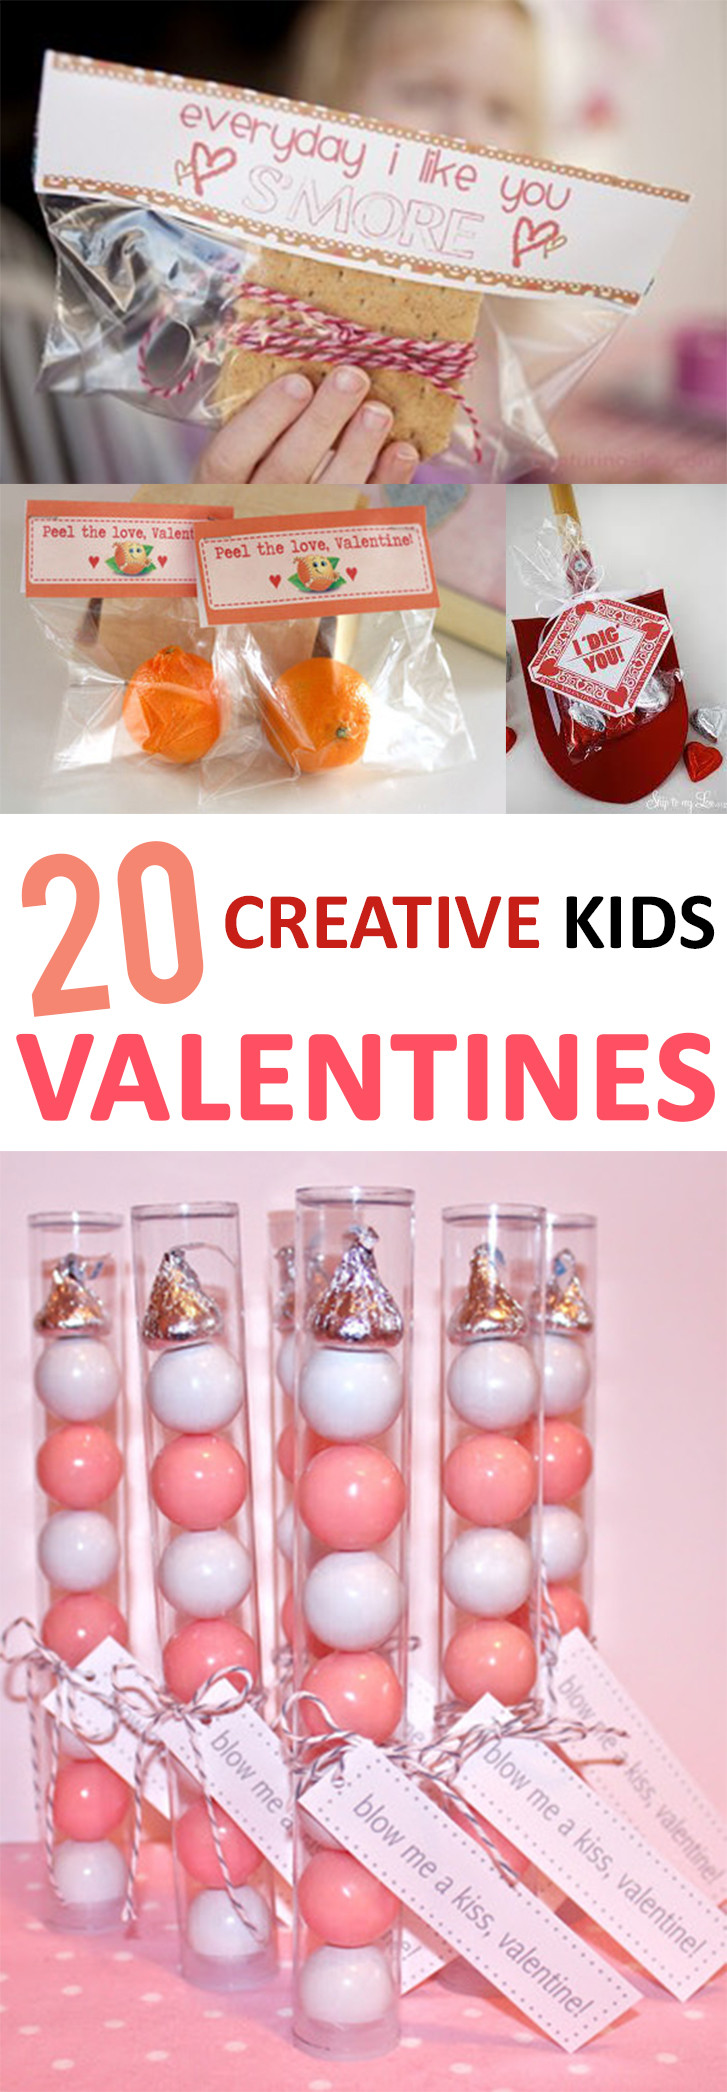 Creative Valentines Day Ideas
 20 Creative Kid s Valentines